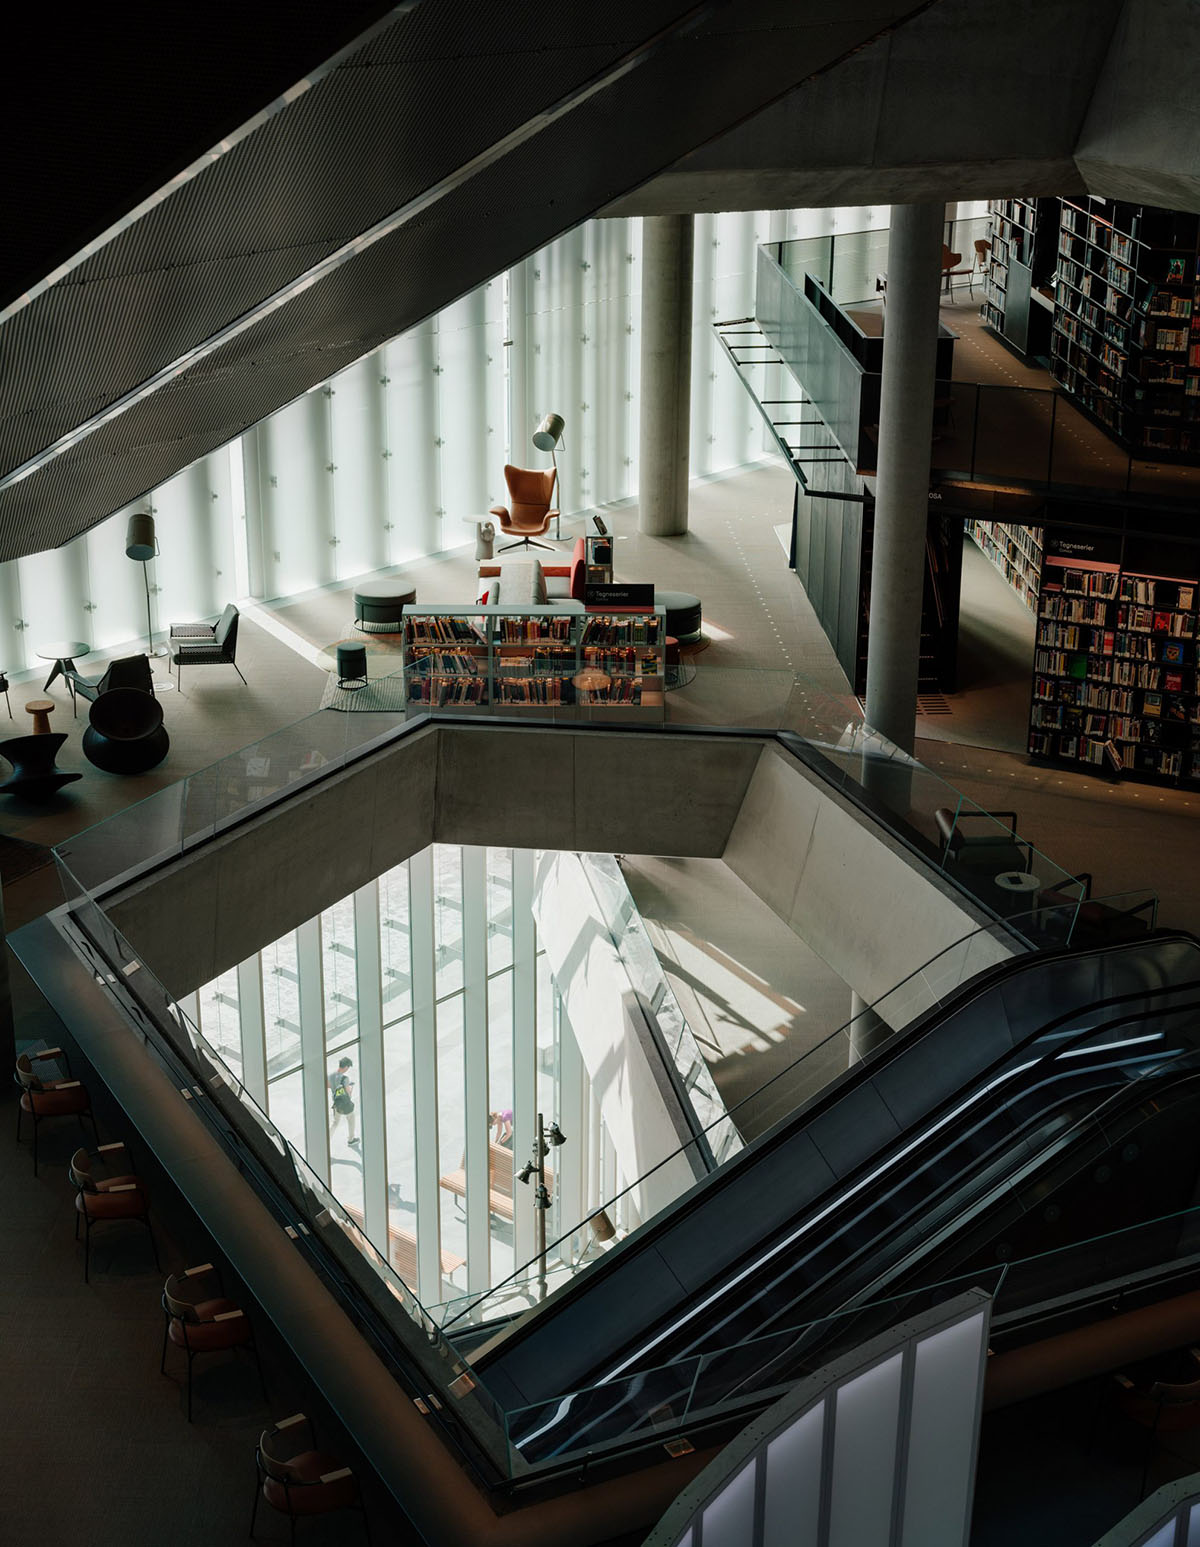 библиотека в норвегии